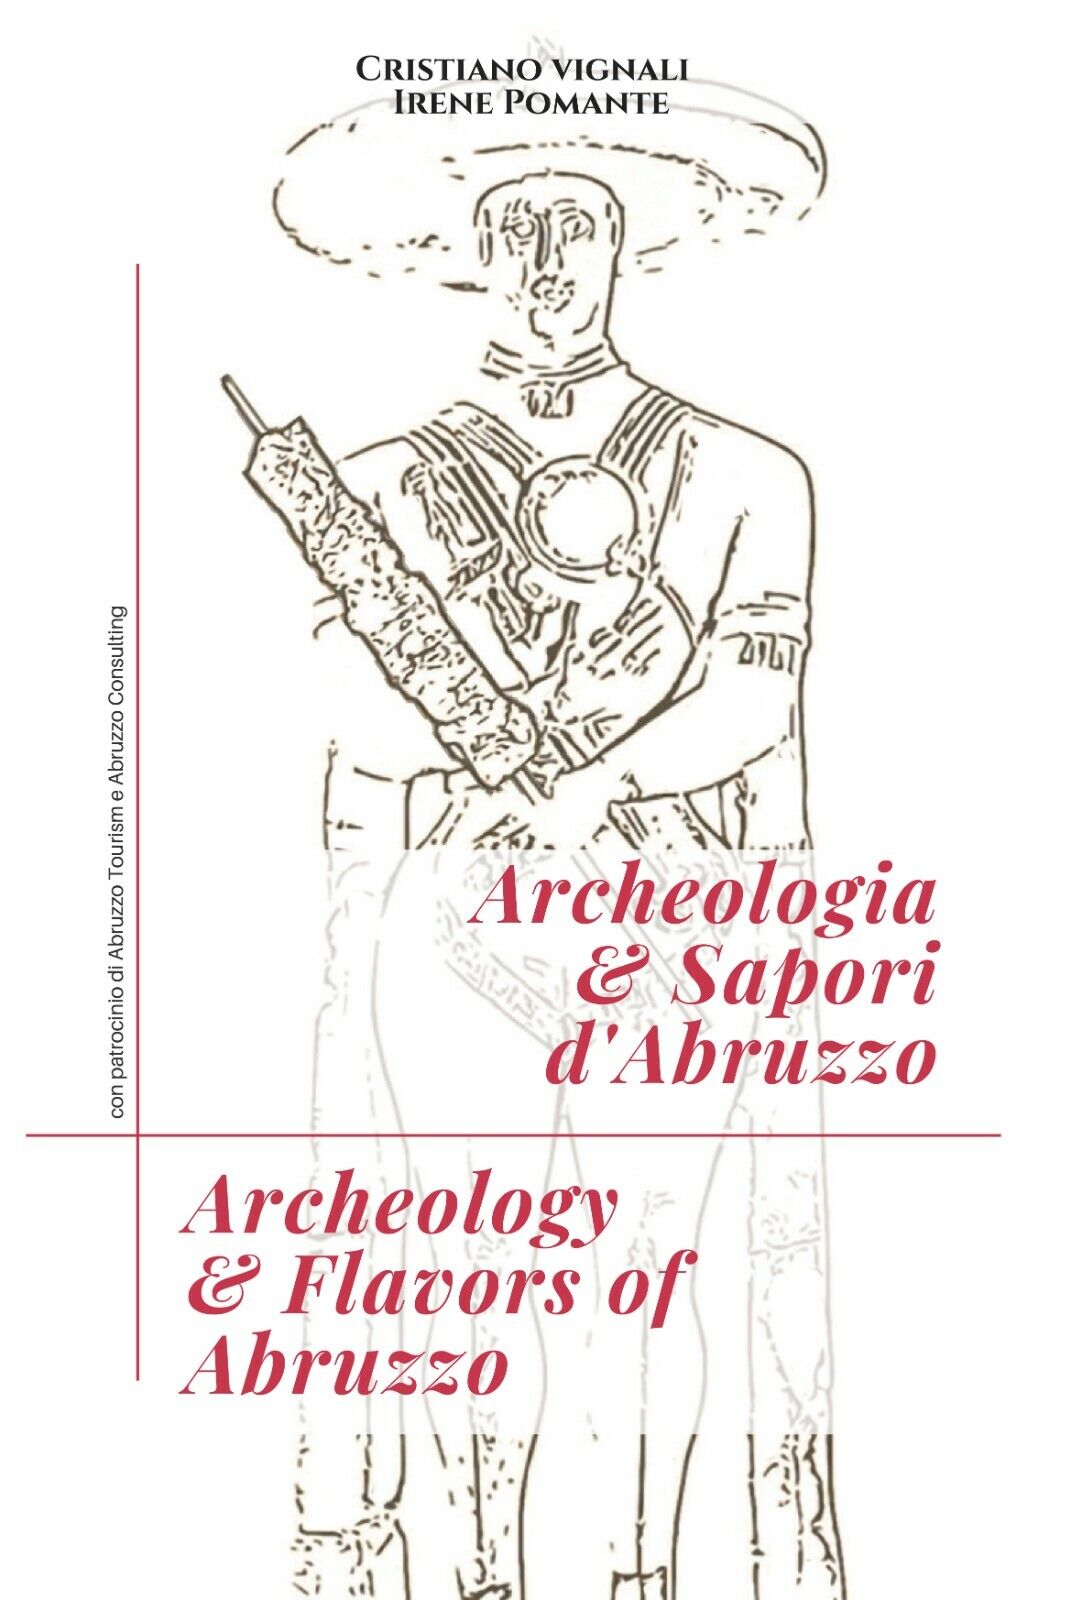 Archeologia & sapori d'Abruzzo. Ediz. italiana e inglese di Cristiano Vignali, 2